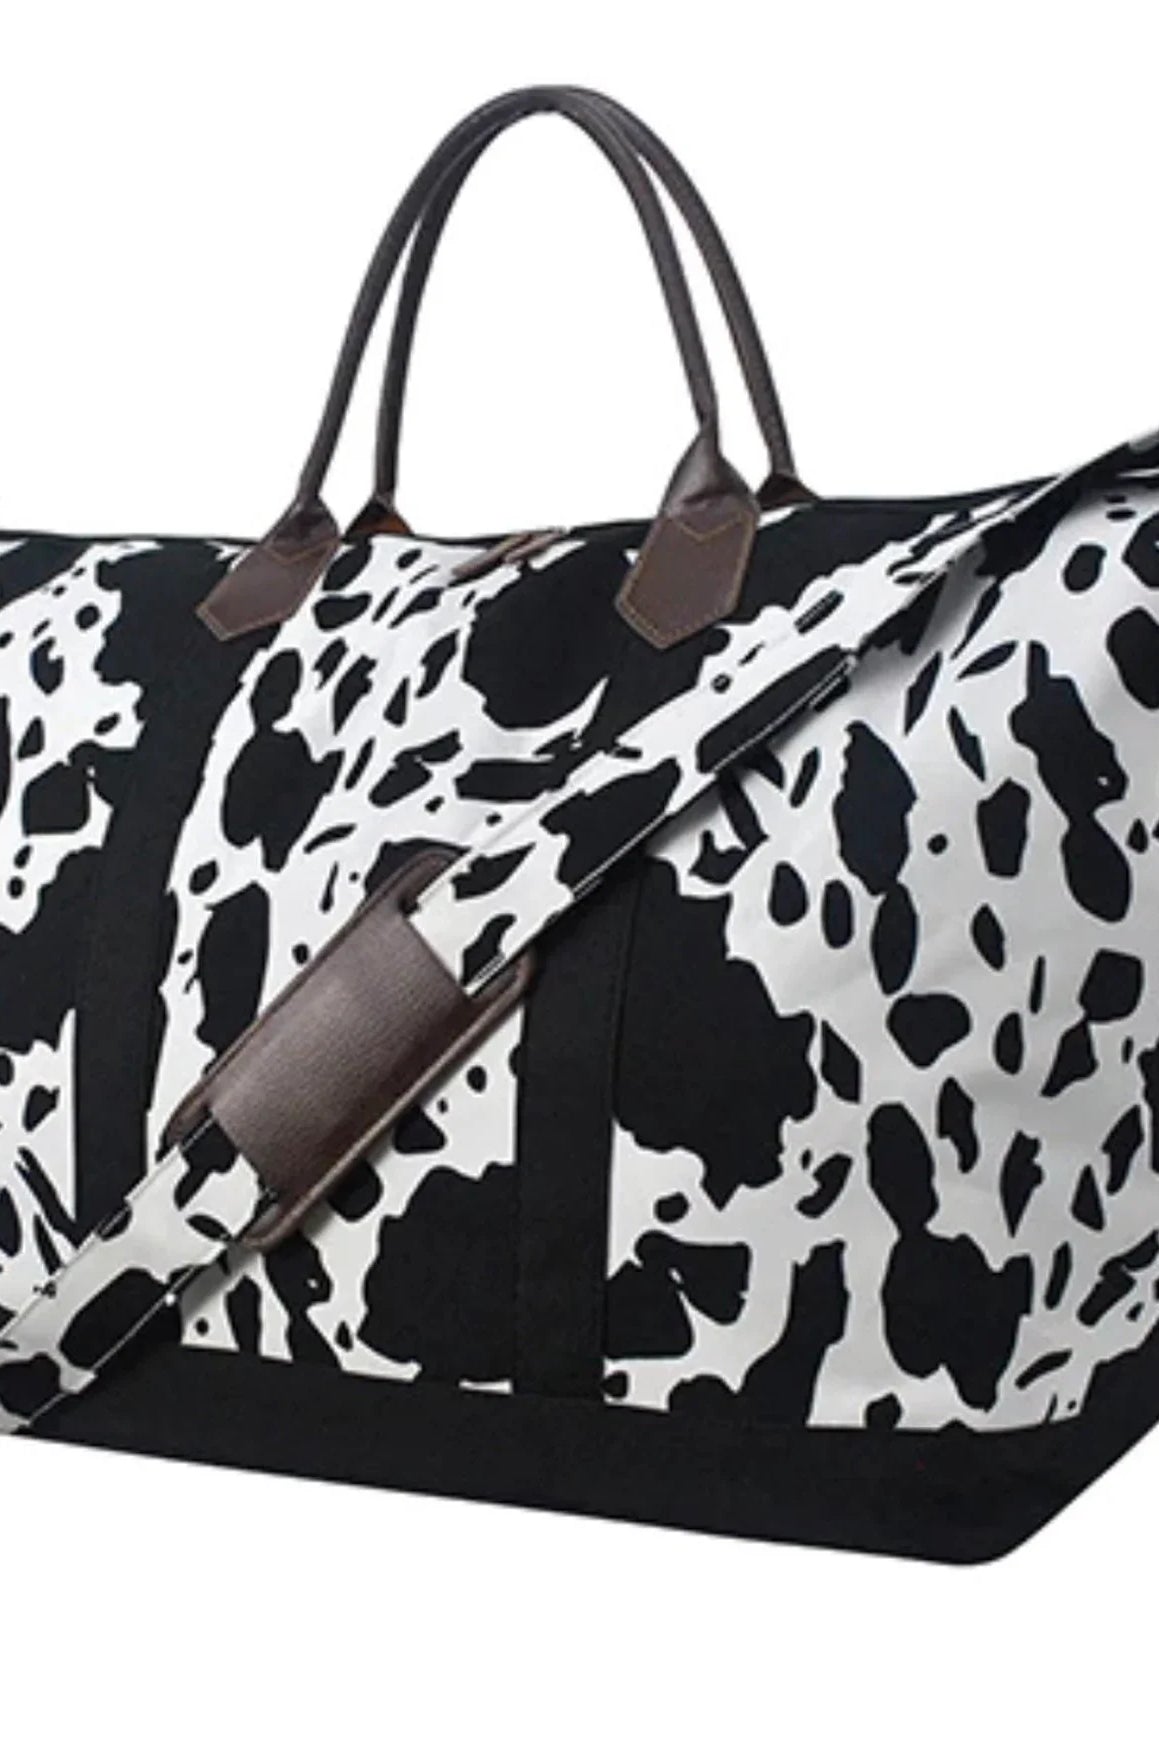 Black Cow Print Weekender Bag Branding Iron Western Wear